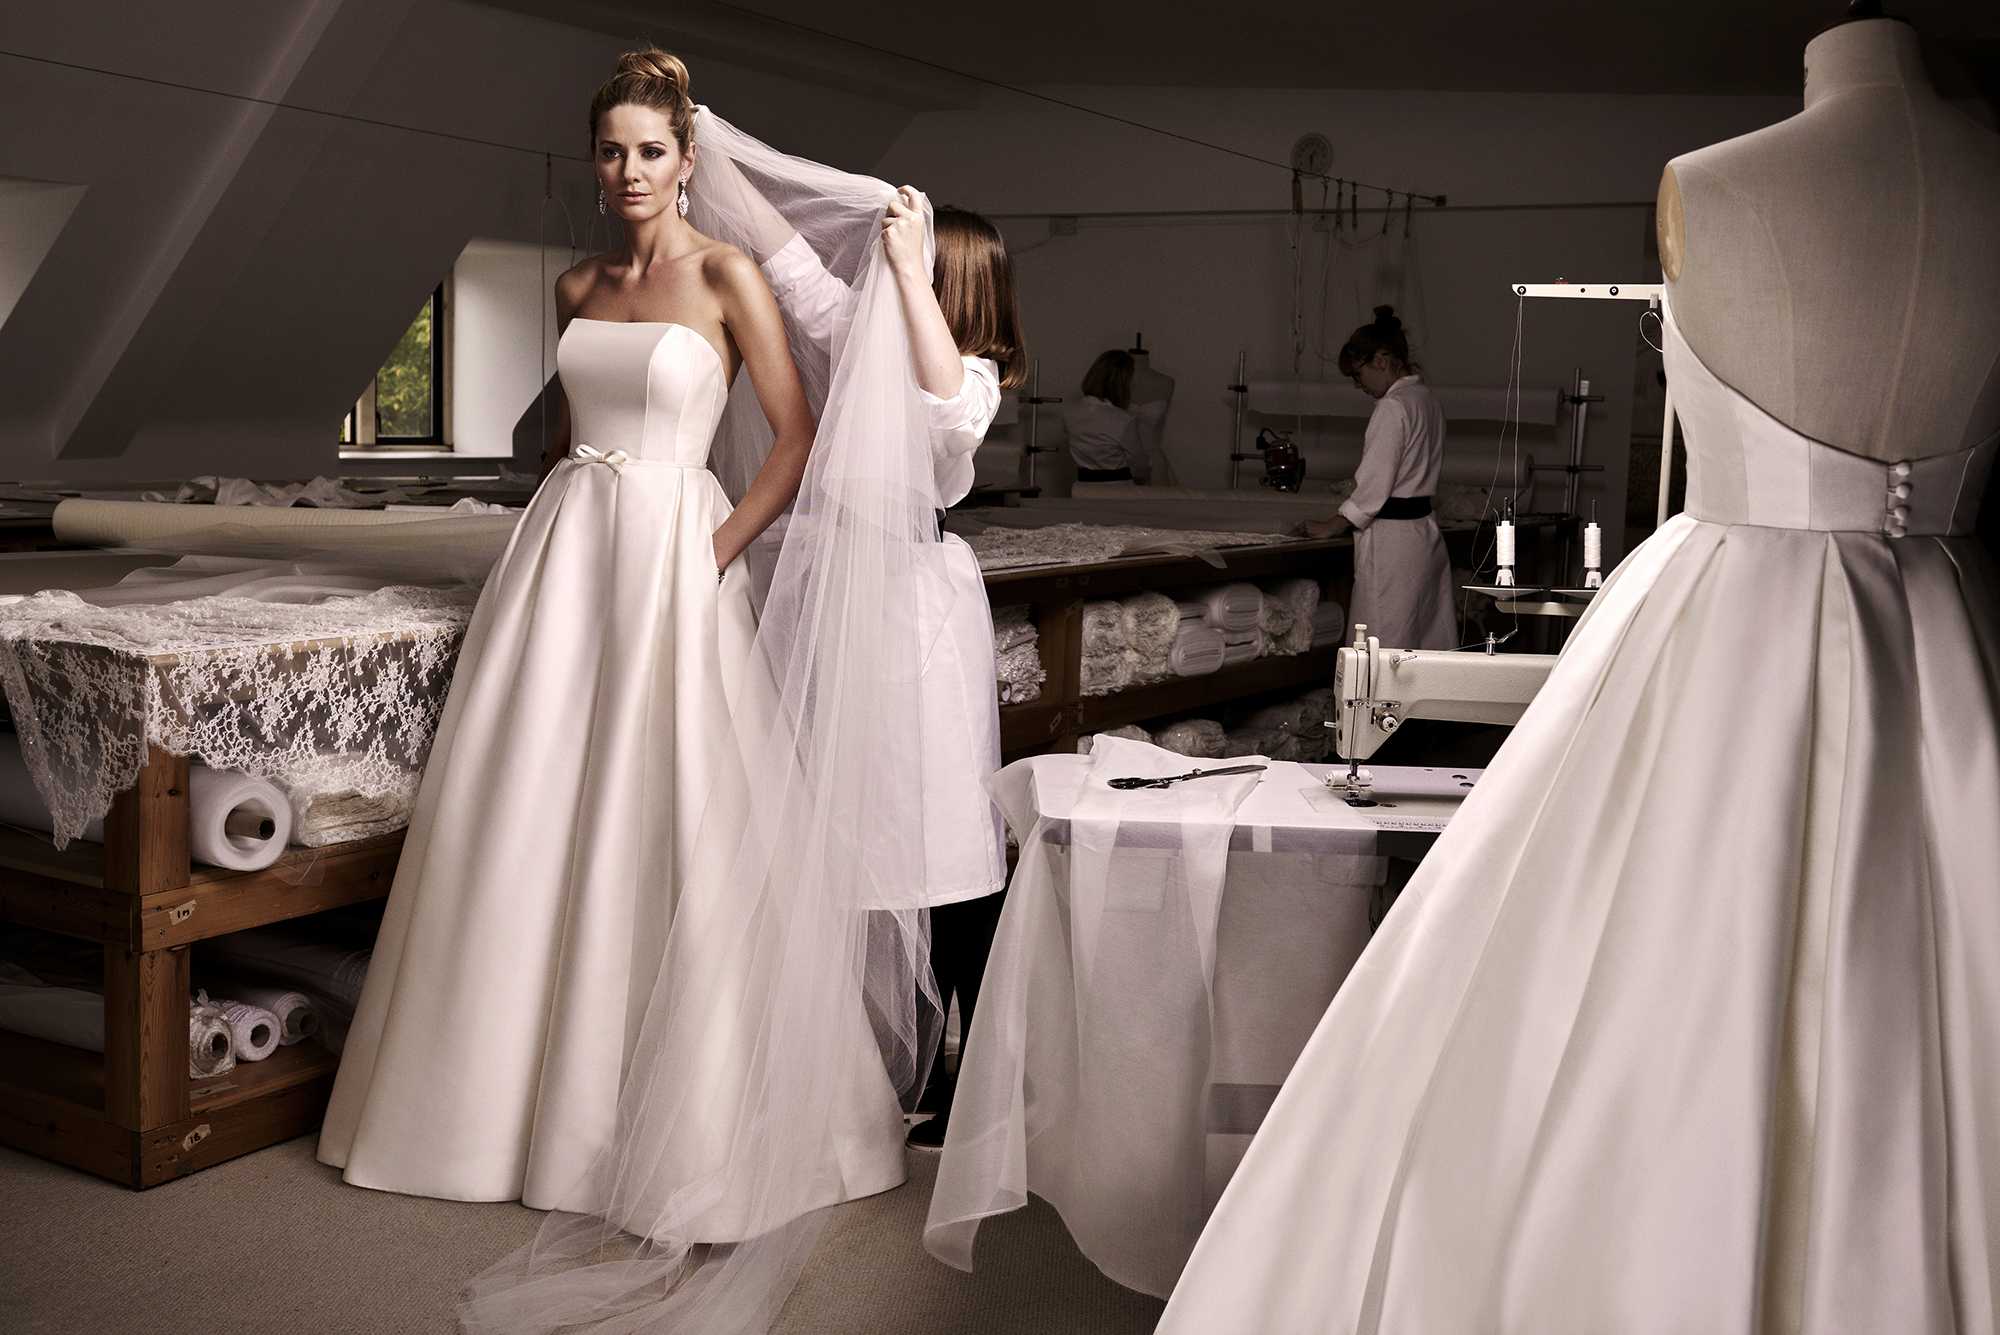 Ошибки при выборе свадебного платья: как их избежать и выбрать идеальный наряд?